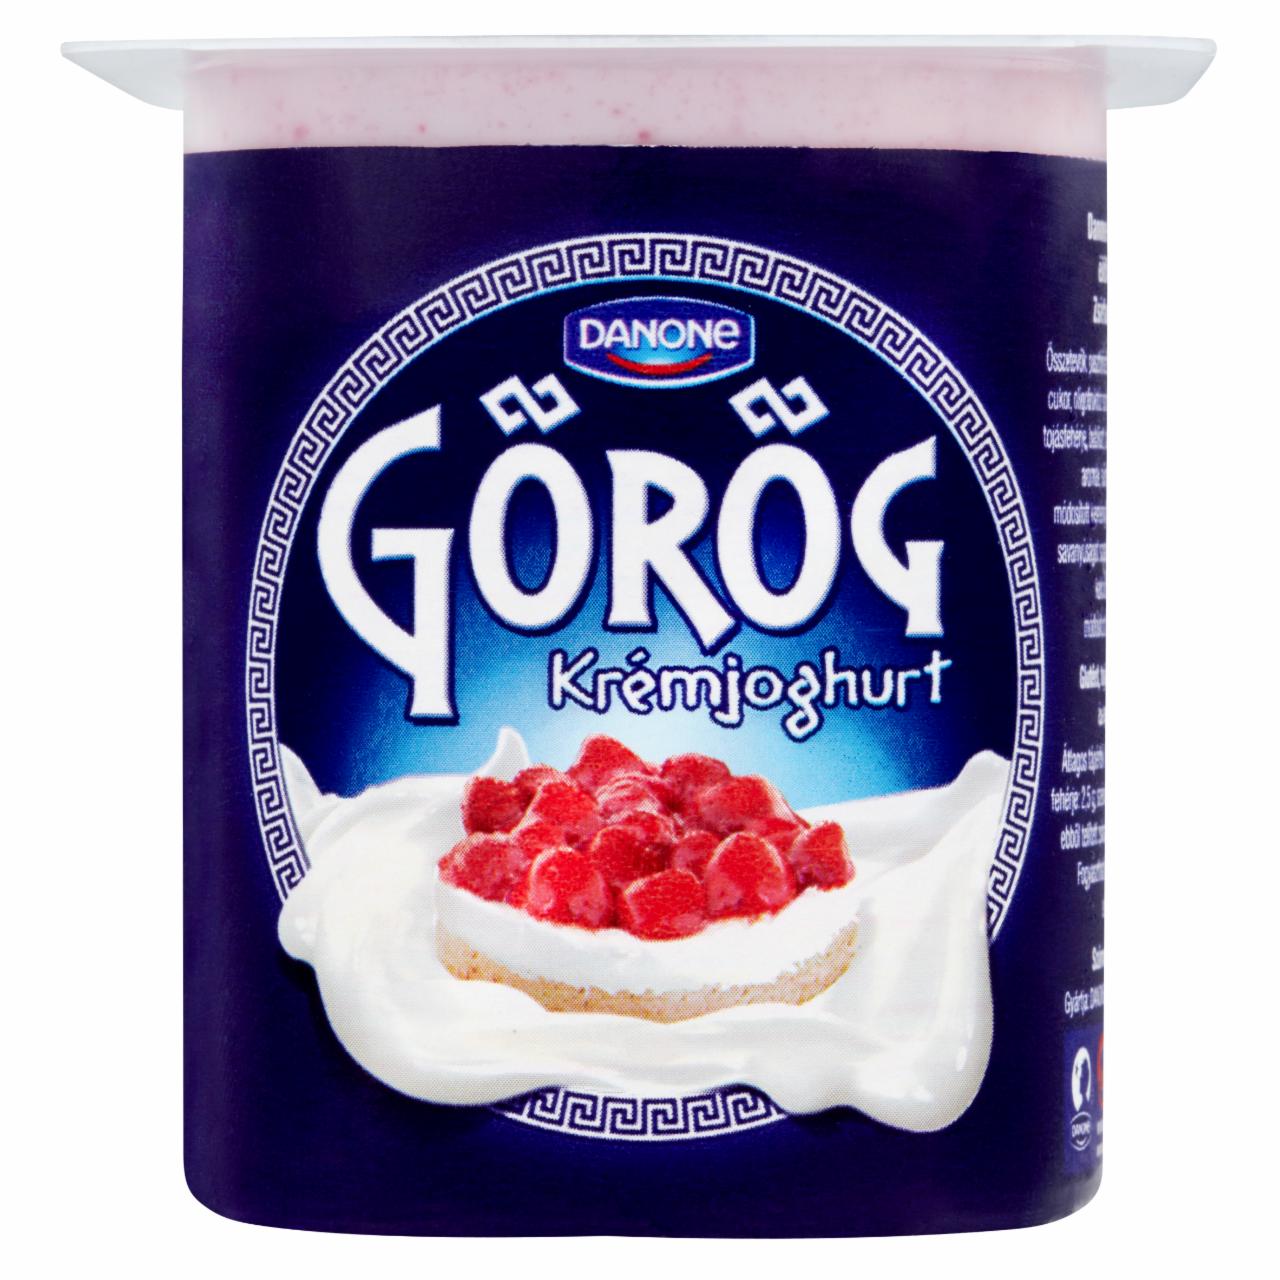 Képek - Danone Görög epertortaízű, élőflórás krémjoghurt 125 g